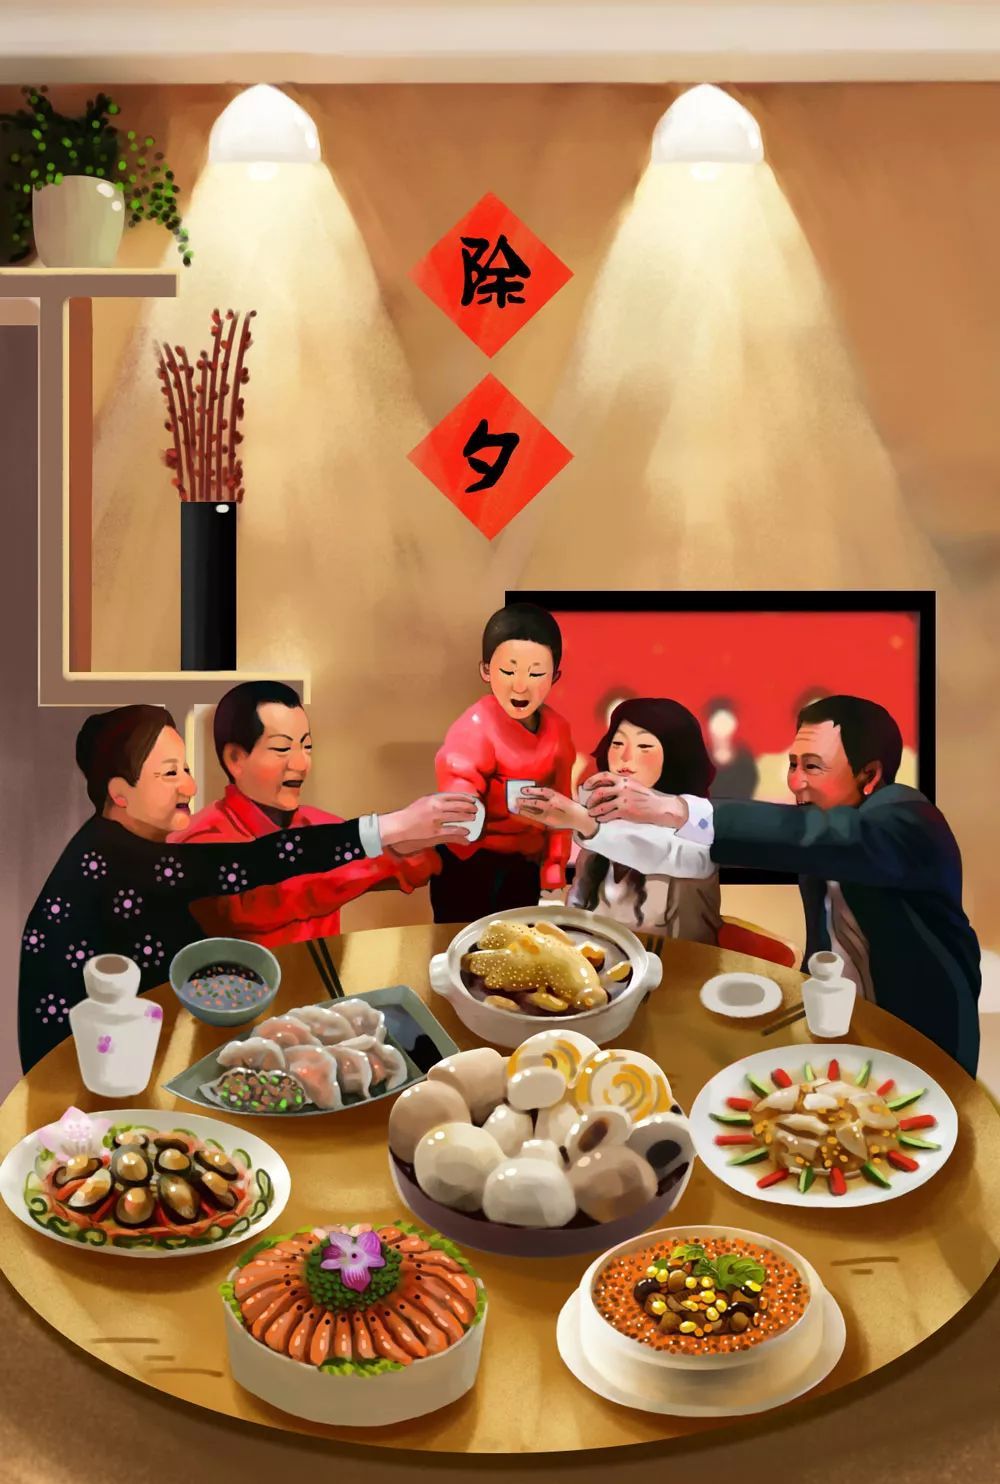 წითლად მოკაზმული ჩინური ახალი წელი მობრძანდება